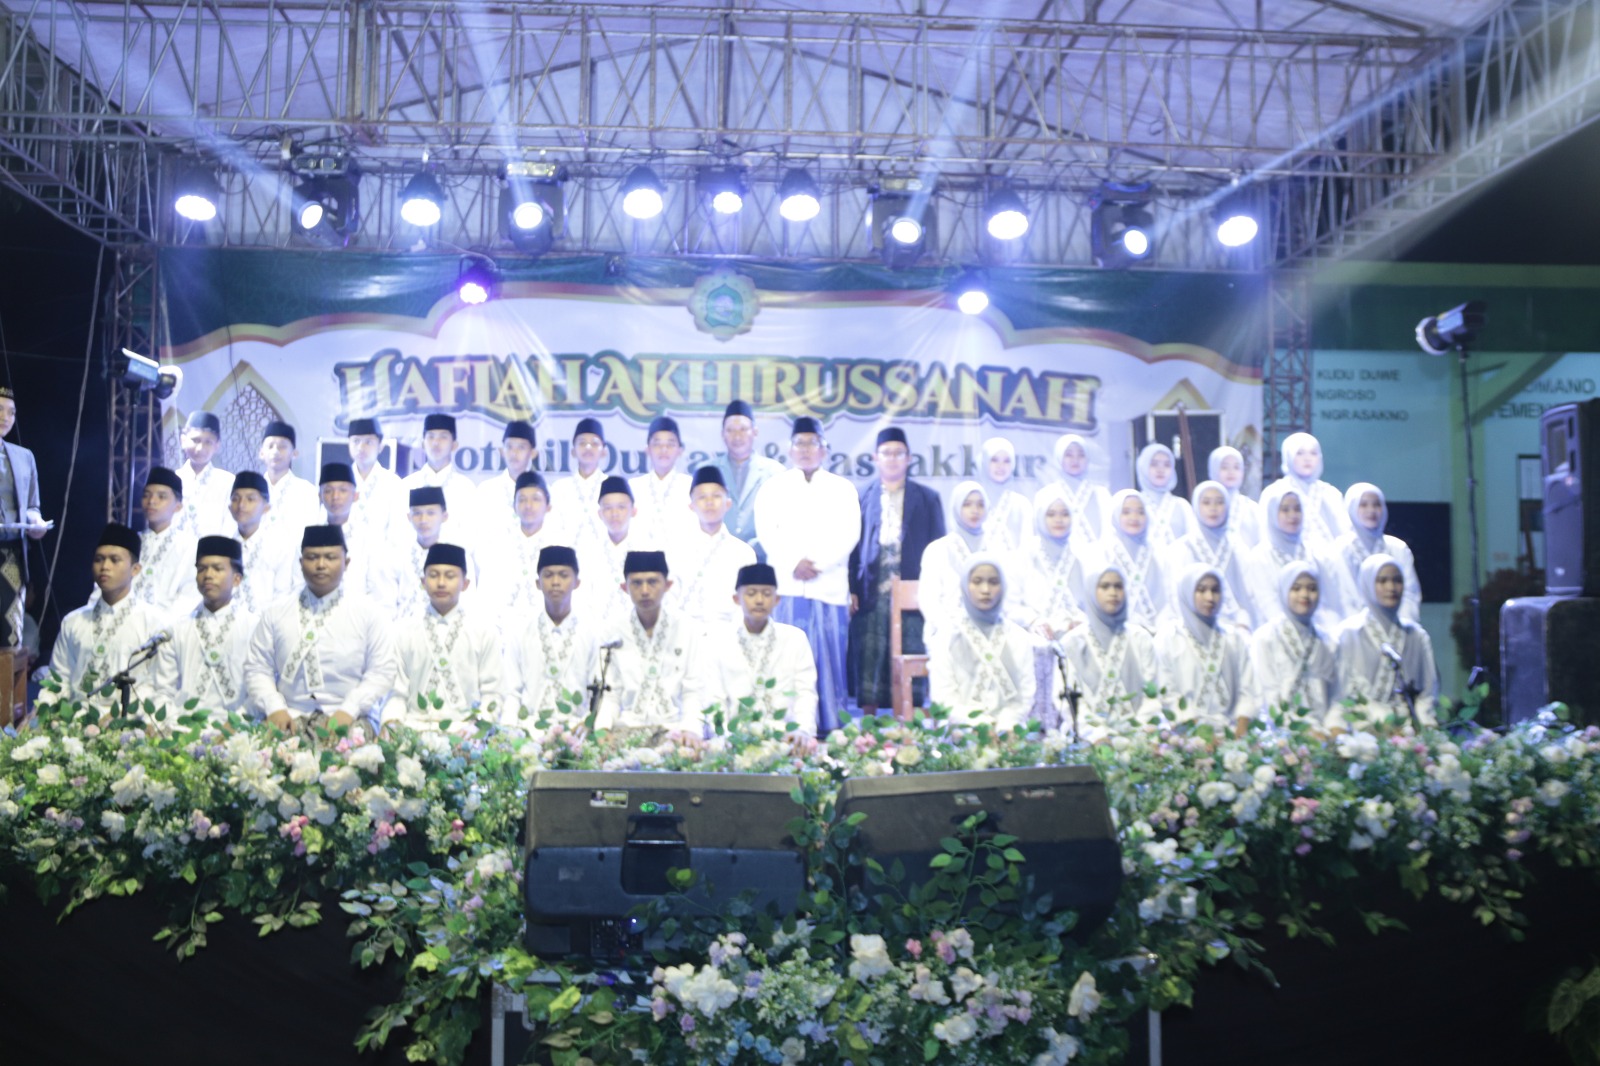 Ponpes dan SMP Terpadu Nurul Islam Surobayan Gelar Haflah Akhirusanah, Dimeriahkan Asyiqol Musthofa